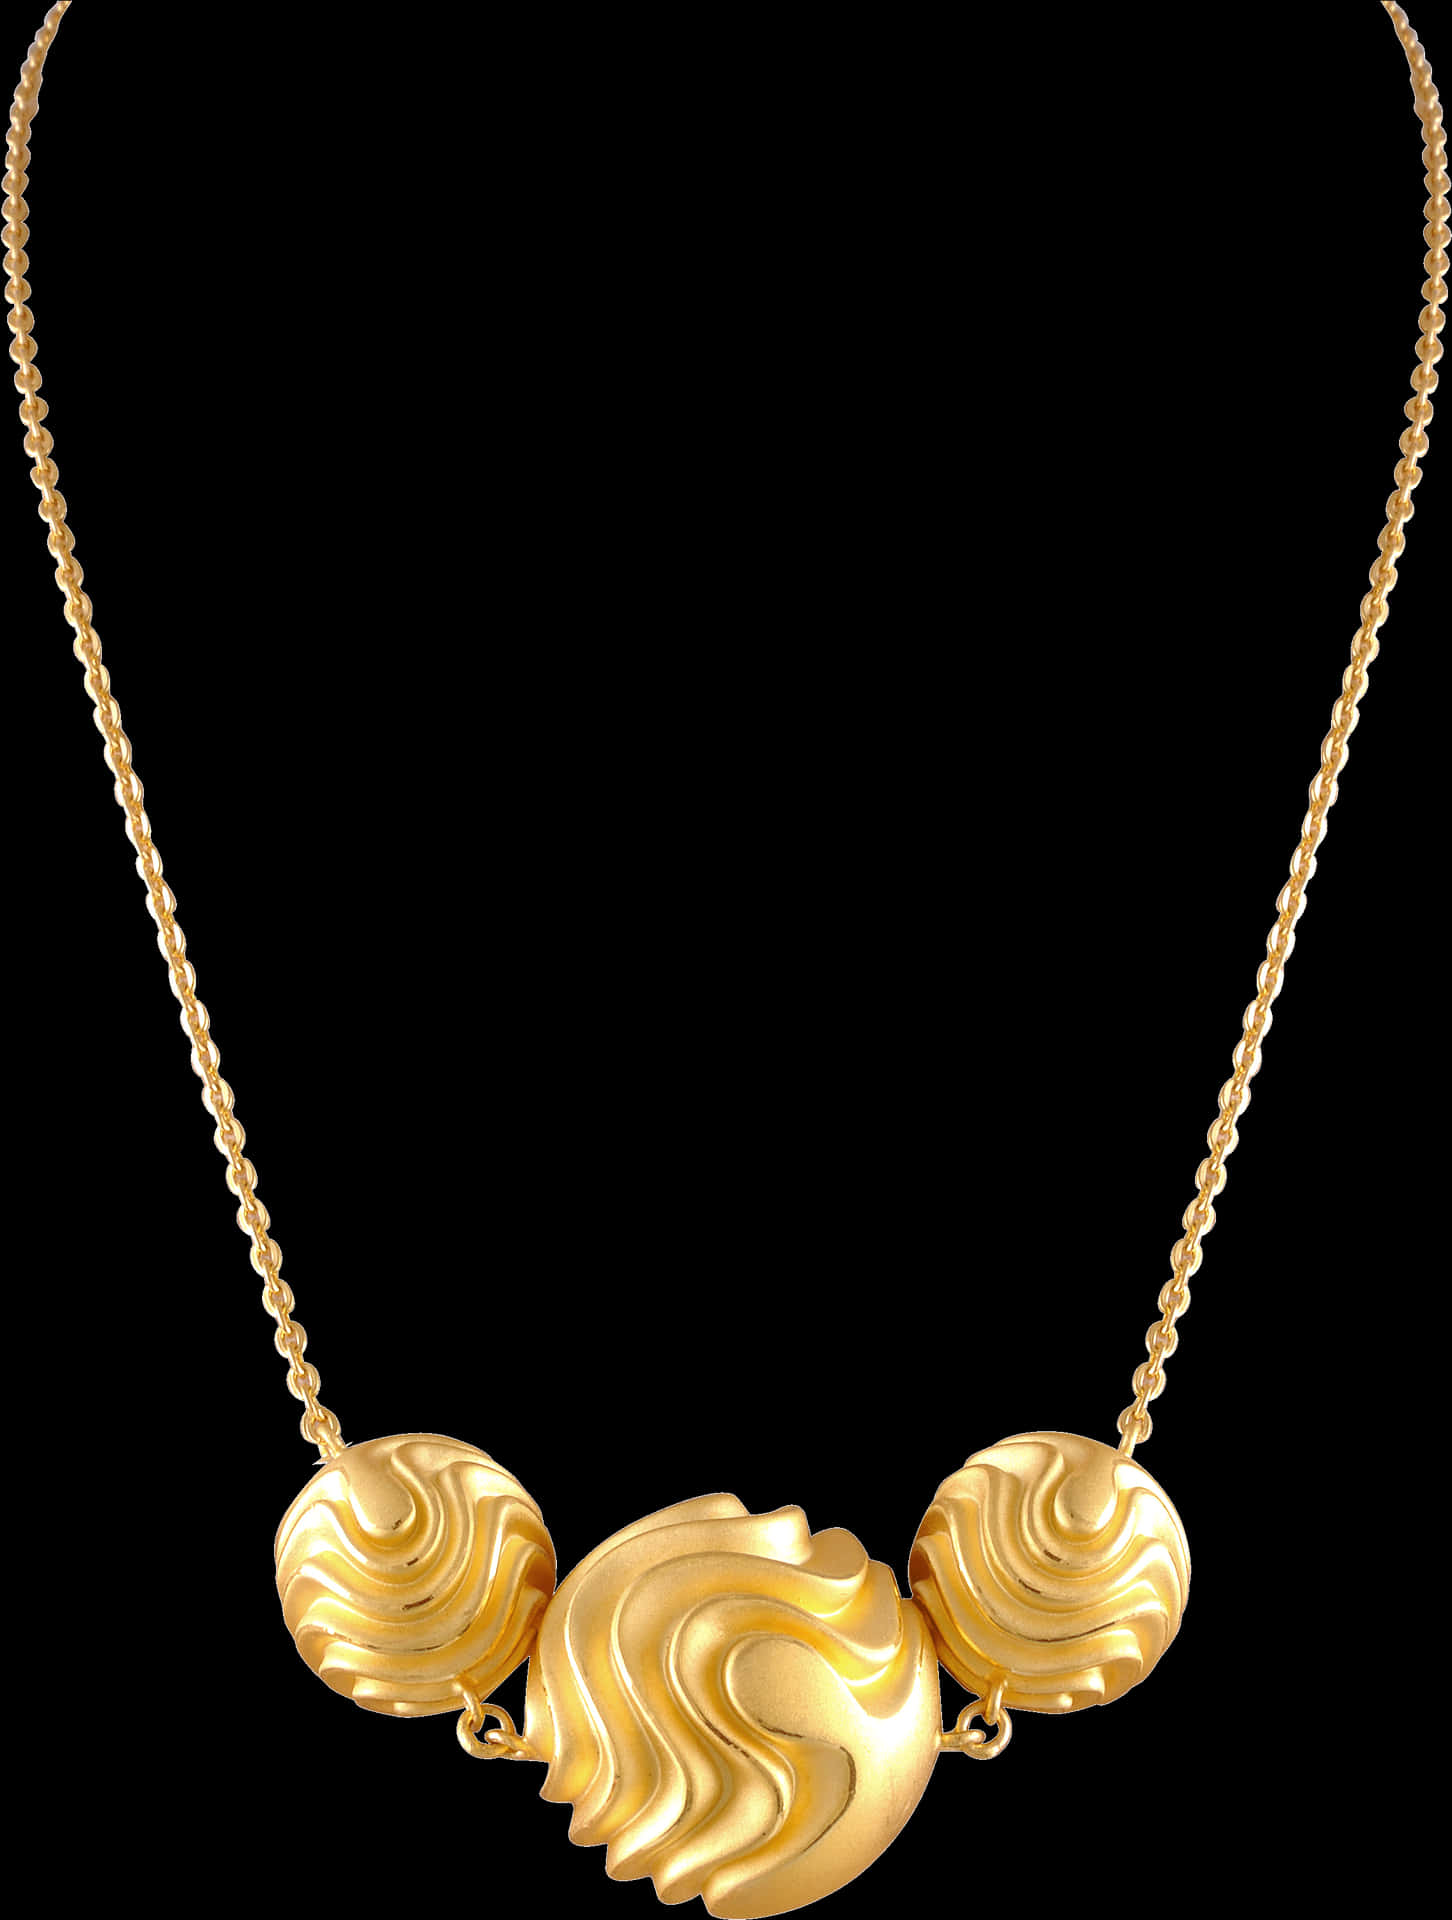 Elegant Gold Necklace Design PNG